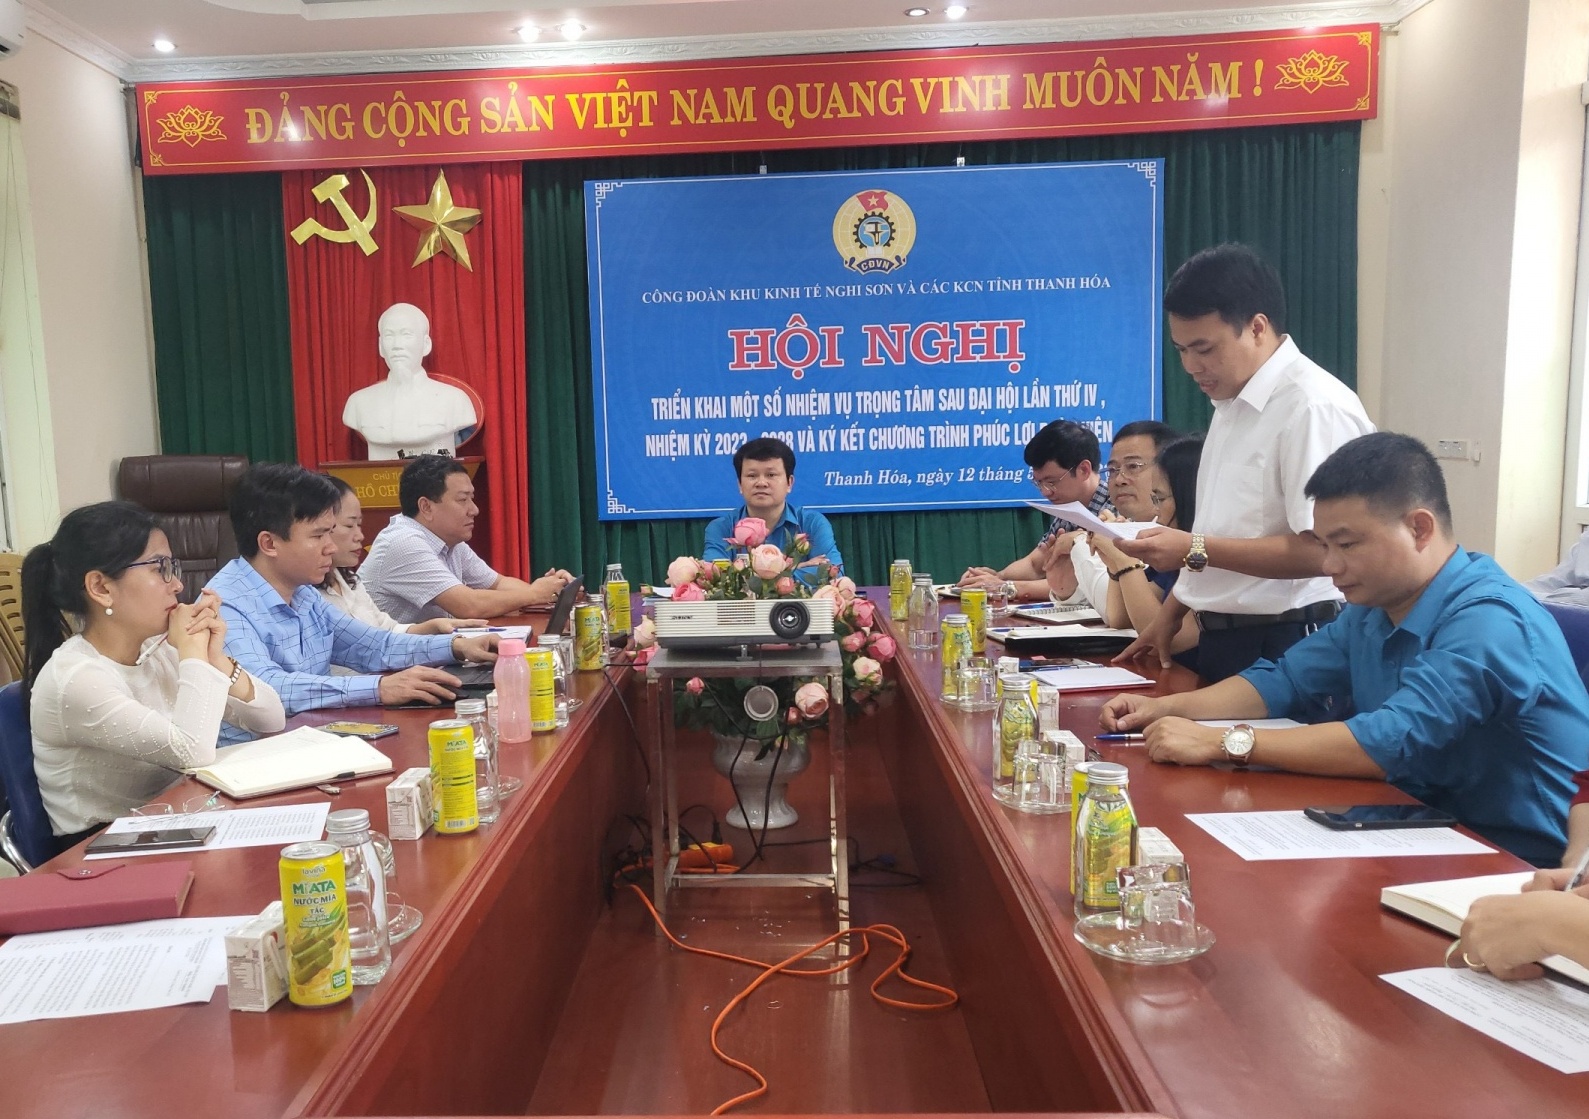 Công đoàn KKT Nghi Sơn và các KCN tỉnh Thanh Hoá: Tập trung triển khai các nhiệm vụ trọng tâm sau Đại hội